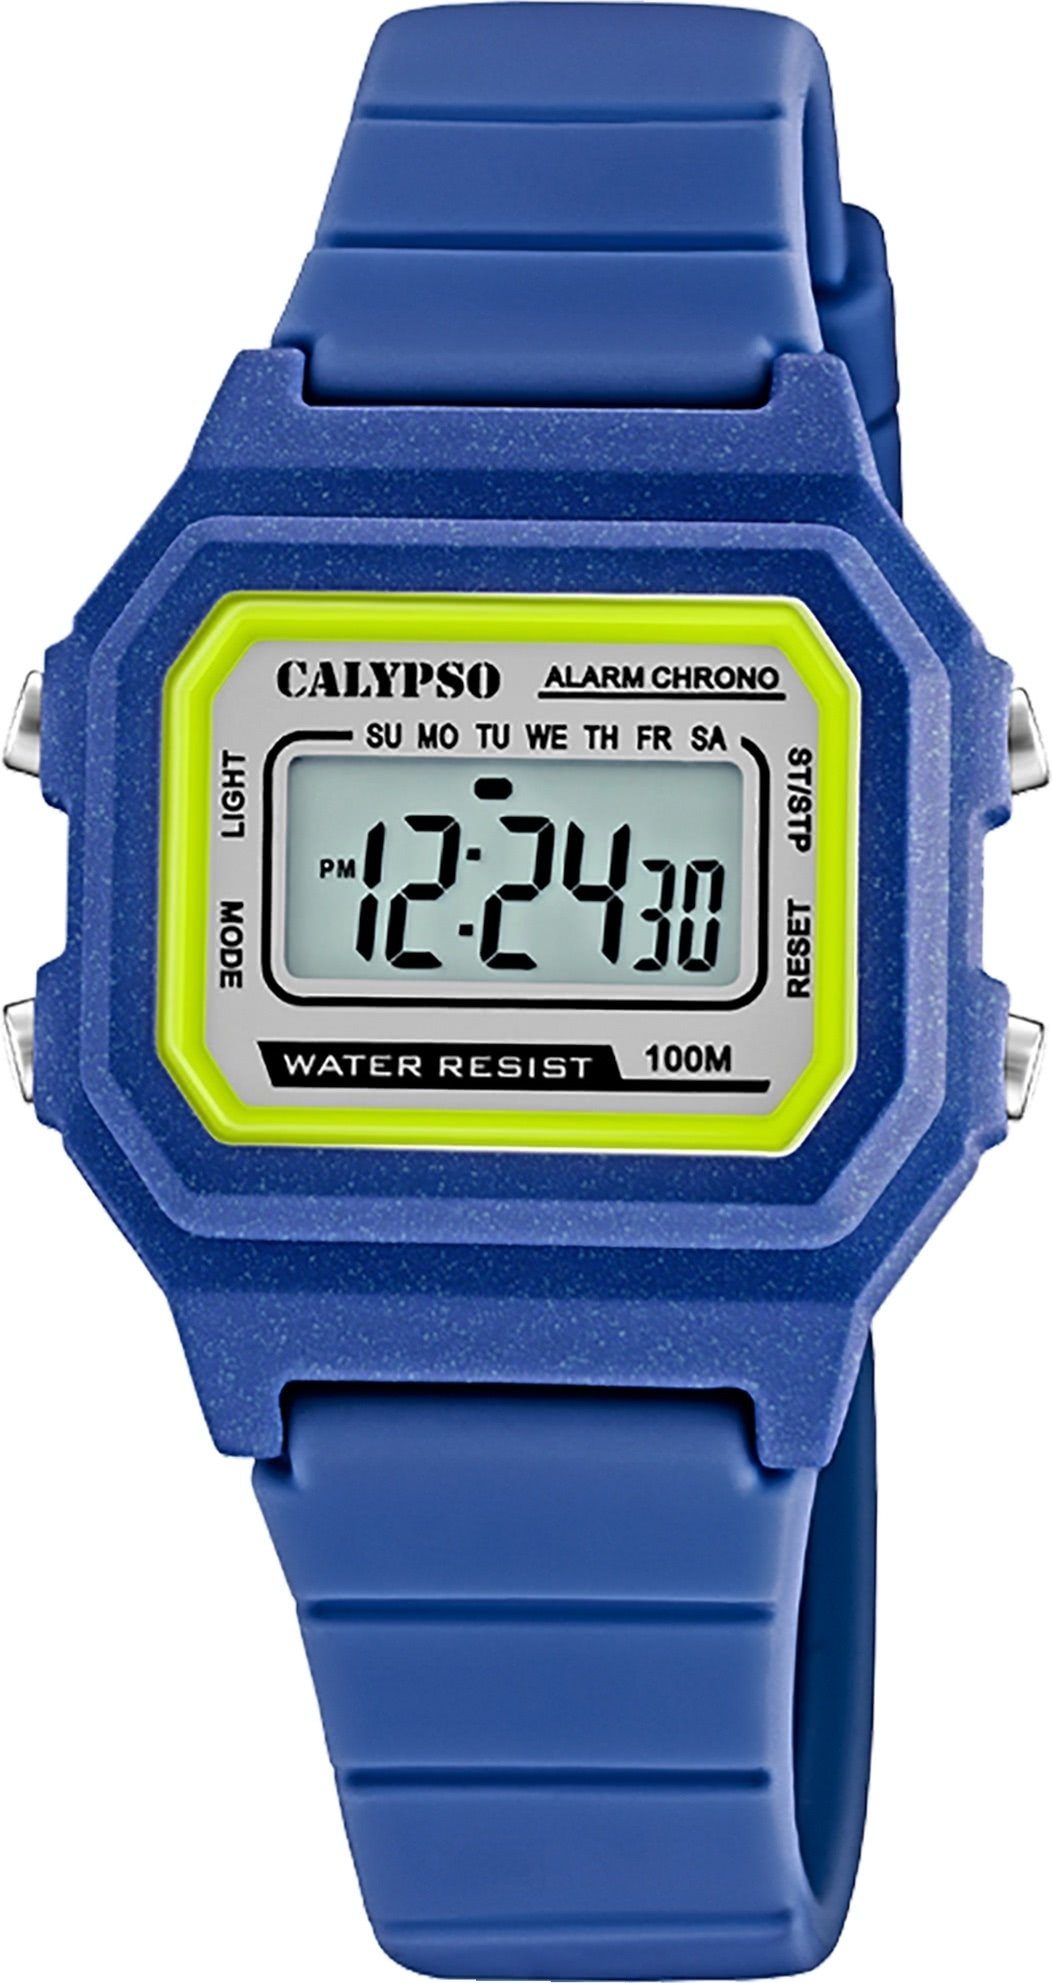 CALYPSO WATCHES Digitaluhr Calypso K5802/5, (ca. Digital Herrenuhr Sport-Style Kunststoffband, Unisex 33mm) mittel Damen, Uhr eckig